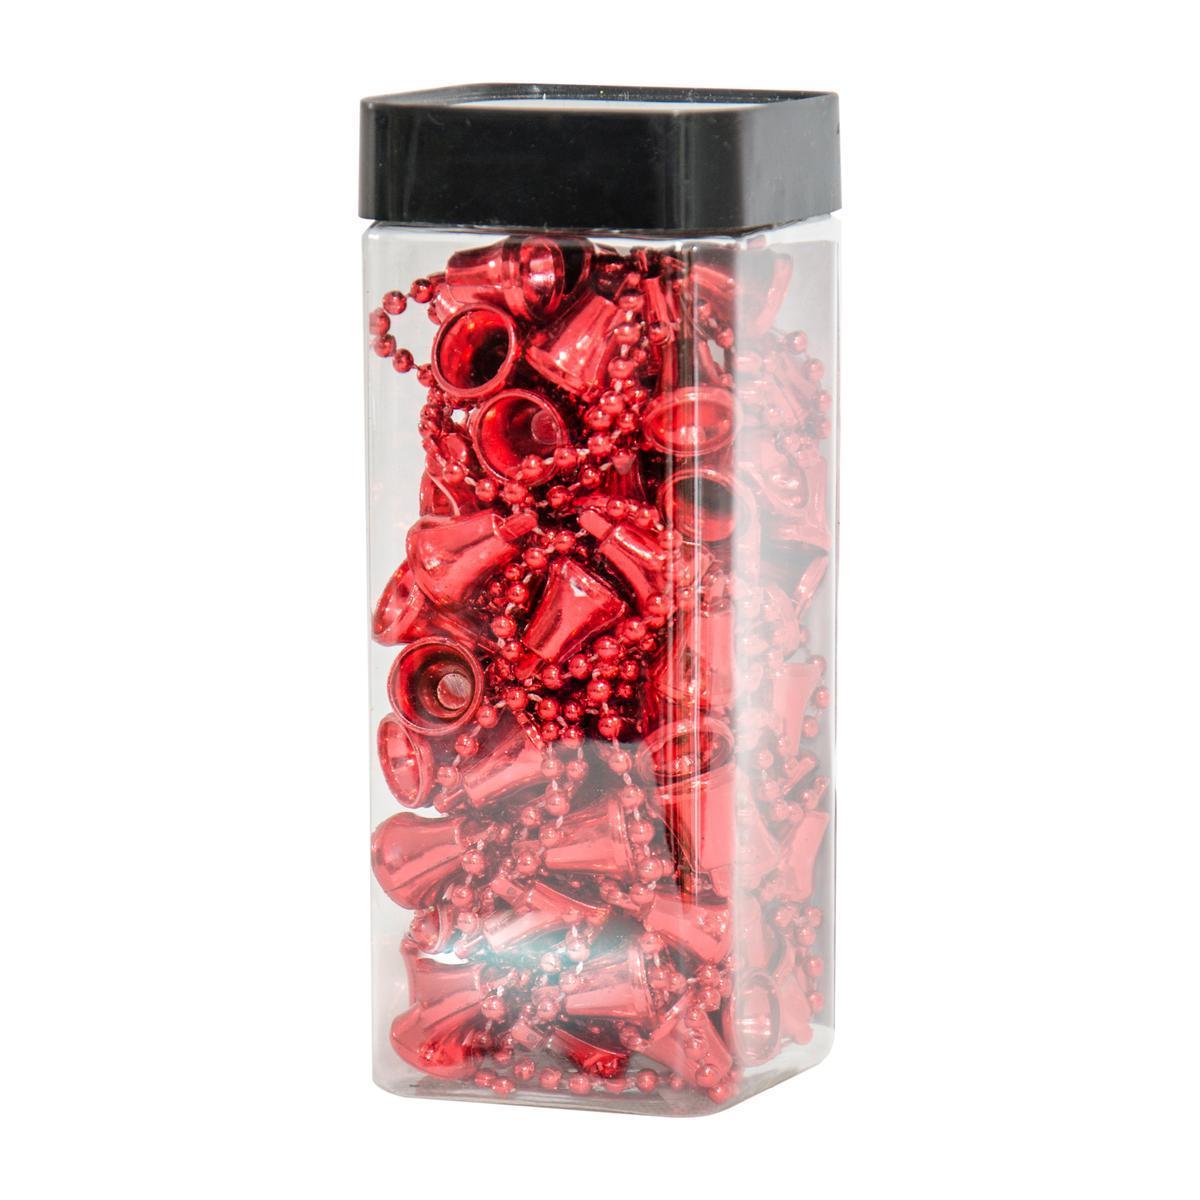 Guirlande cloches - Acrylique - 6,5 x 6,5 x H 16 cm - Rouge